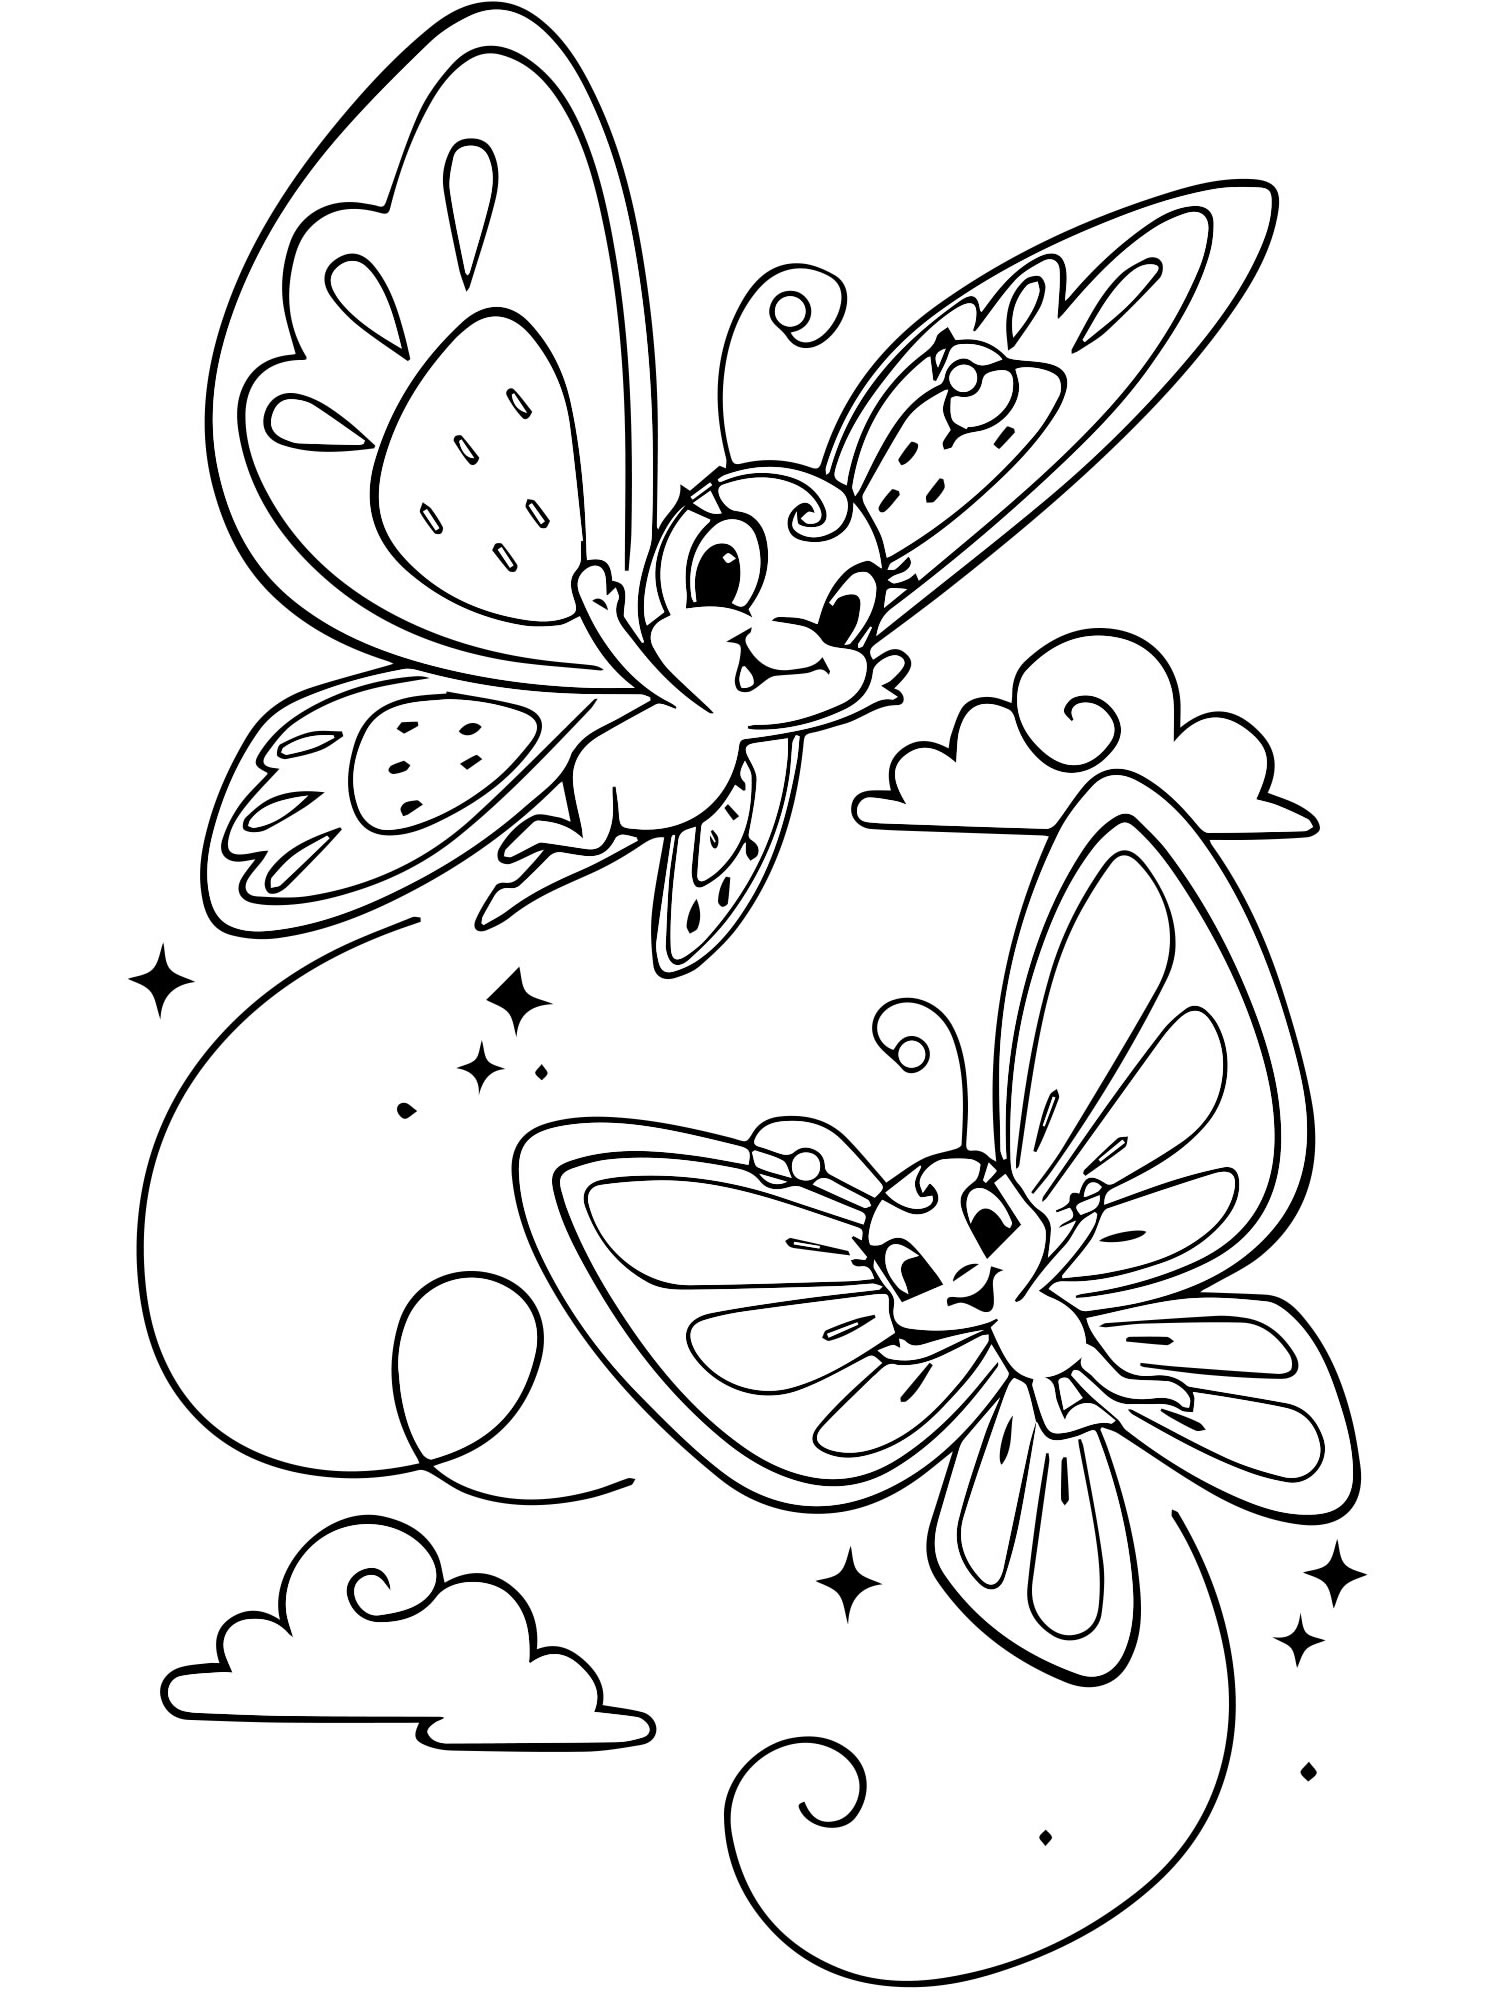 Раскраска пластилином Бабочки-красавицы с рамкой Пк-019